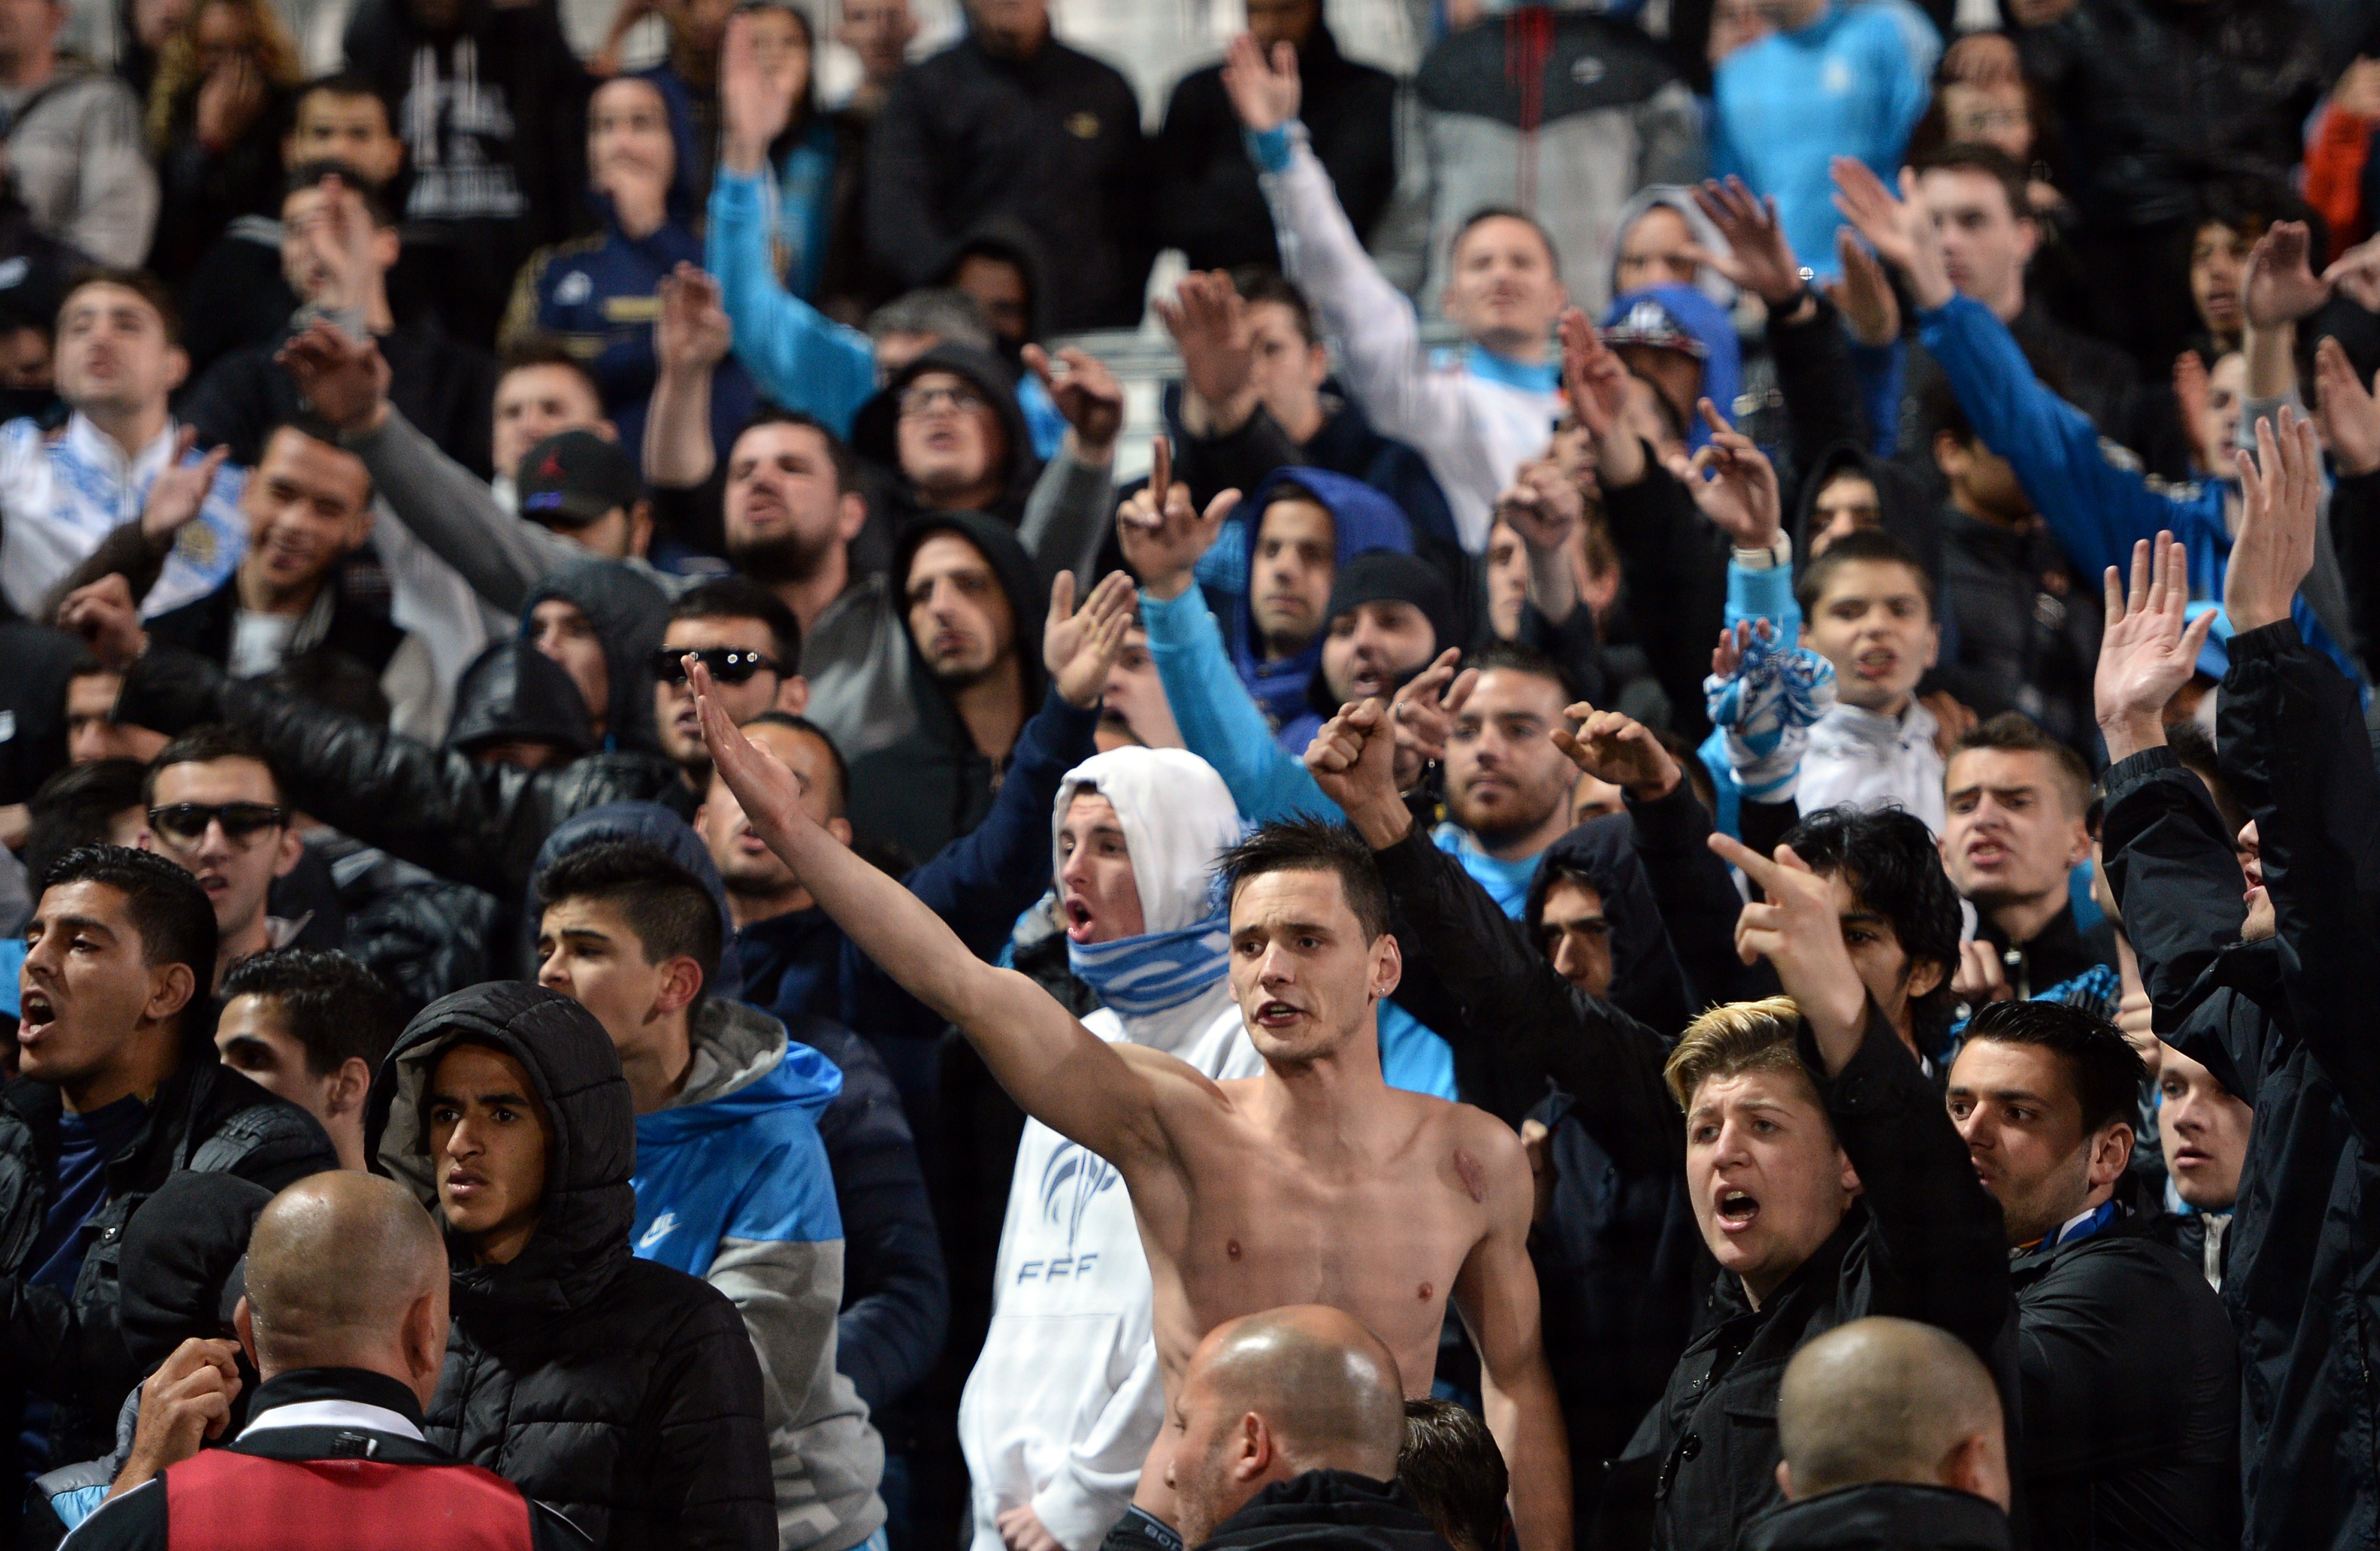 PSG-OM - Les images de joie à Marseille et à l'arrivée des joueurs à l'aéroport